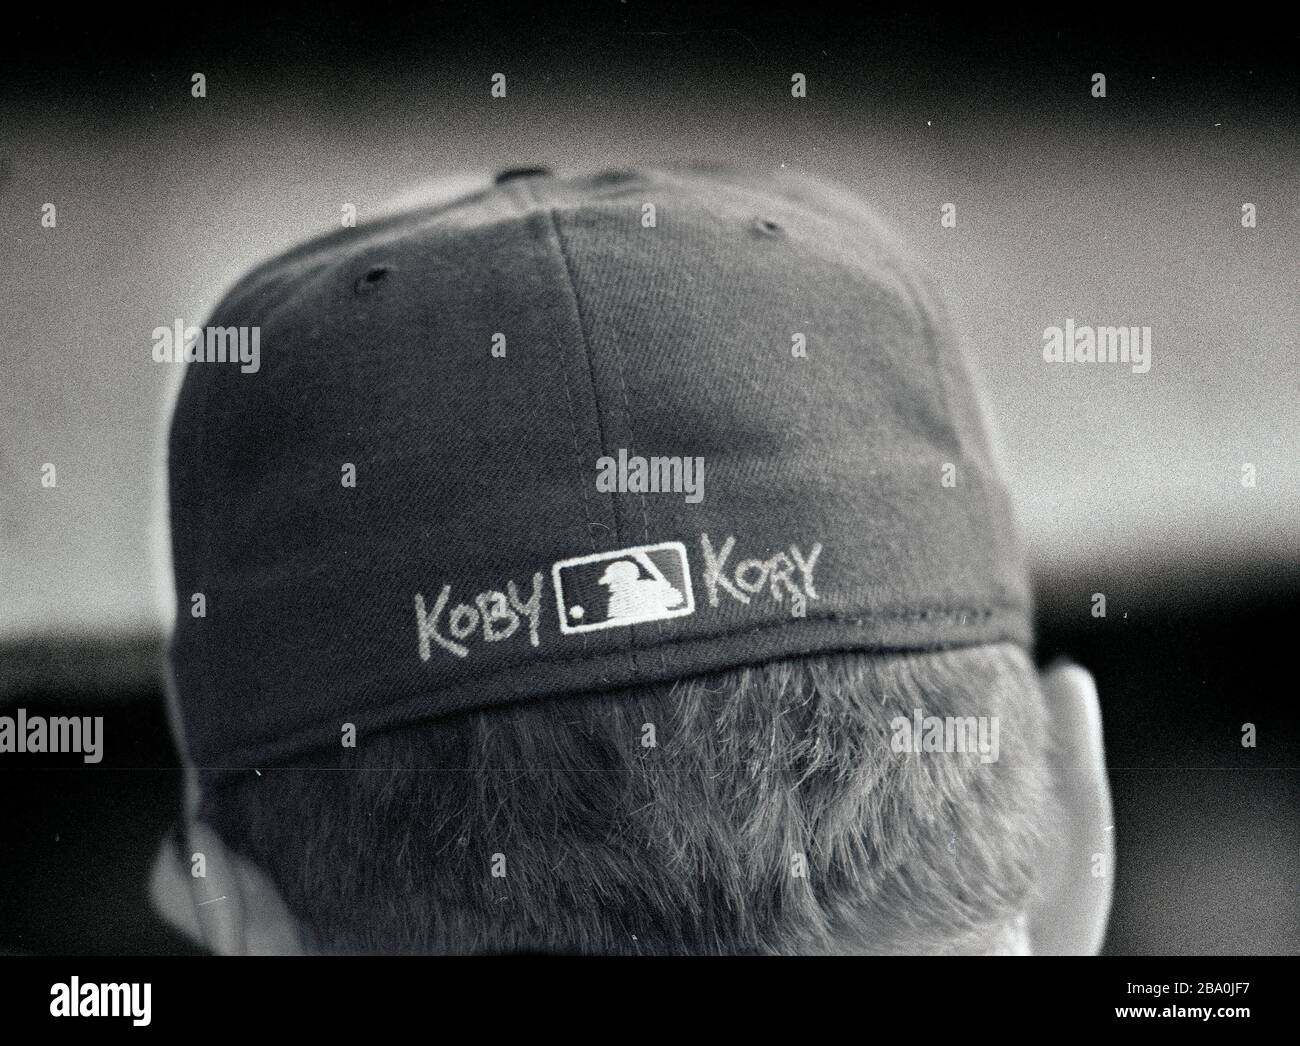 Roger Clemens, lanciatore di Boston Red Sox, scrisse i nomi dei suoi figli sul suo cappello come tributo al Fenway Park nella foto di Boston ma USA degli anni '90 di Bill belknap Foto Stock